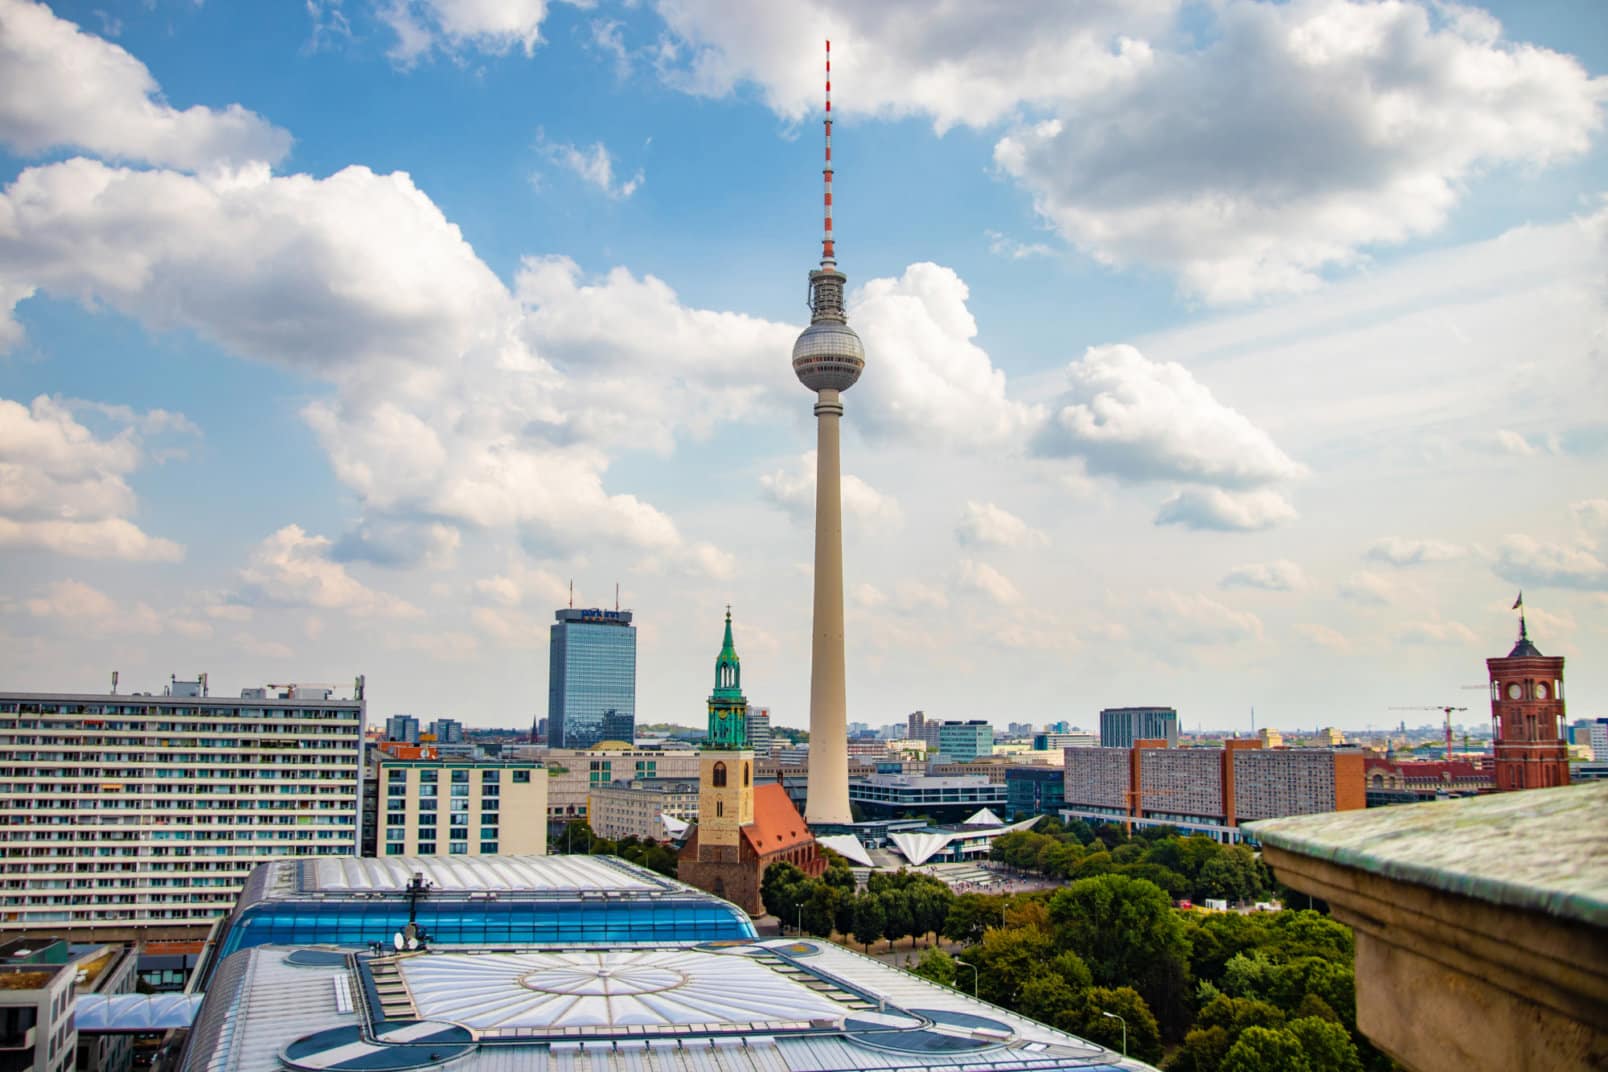 Blick auf den Fernsehturm in Berlin sowie weitere Gebäude im Umfeld